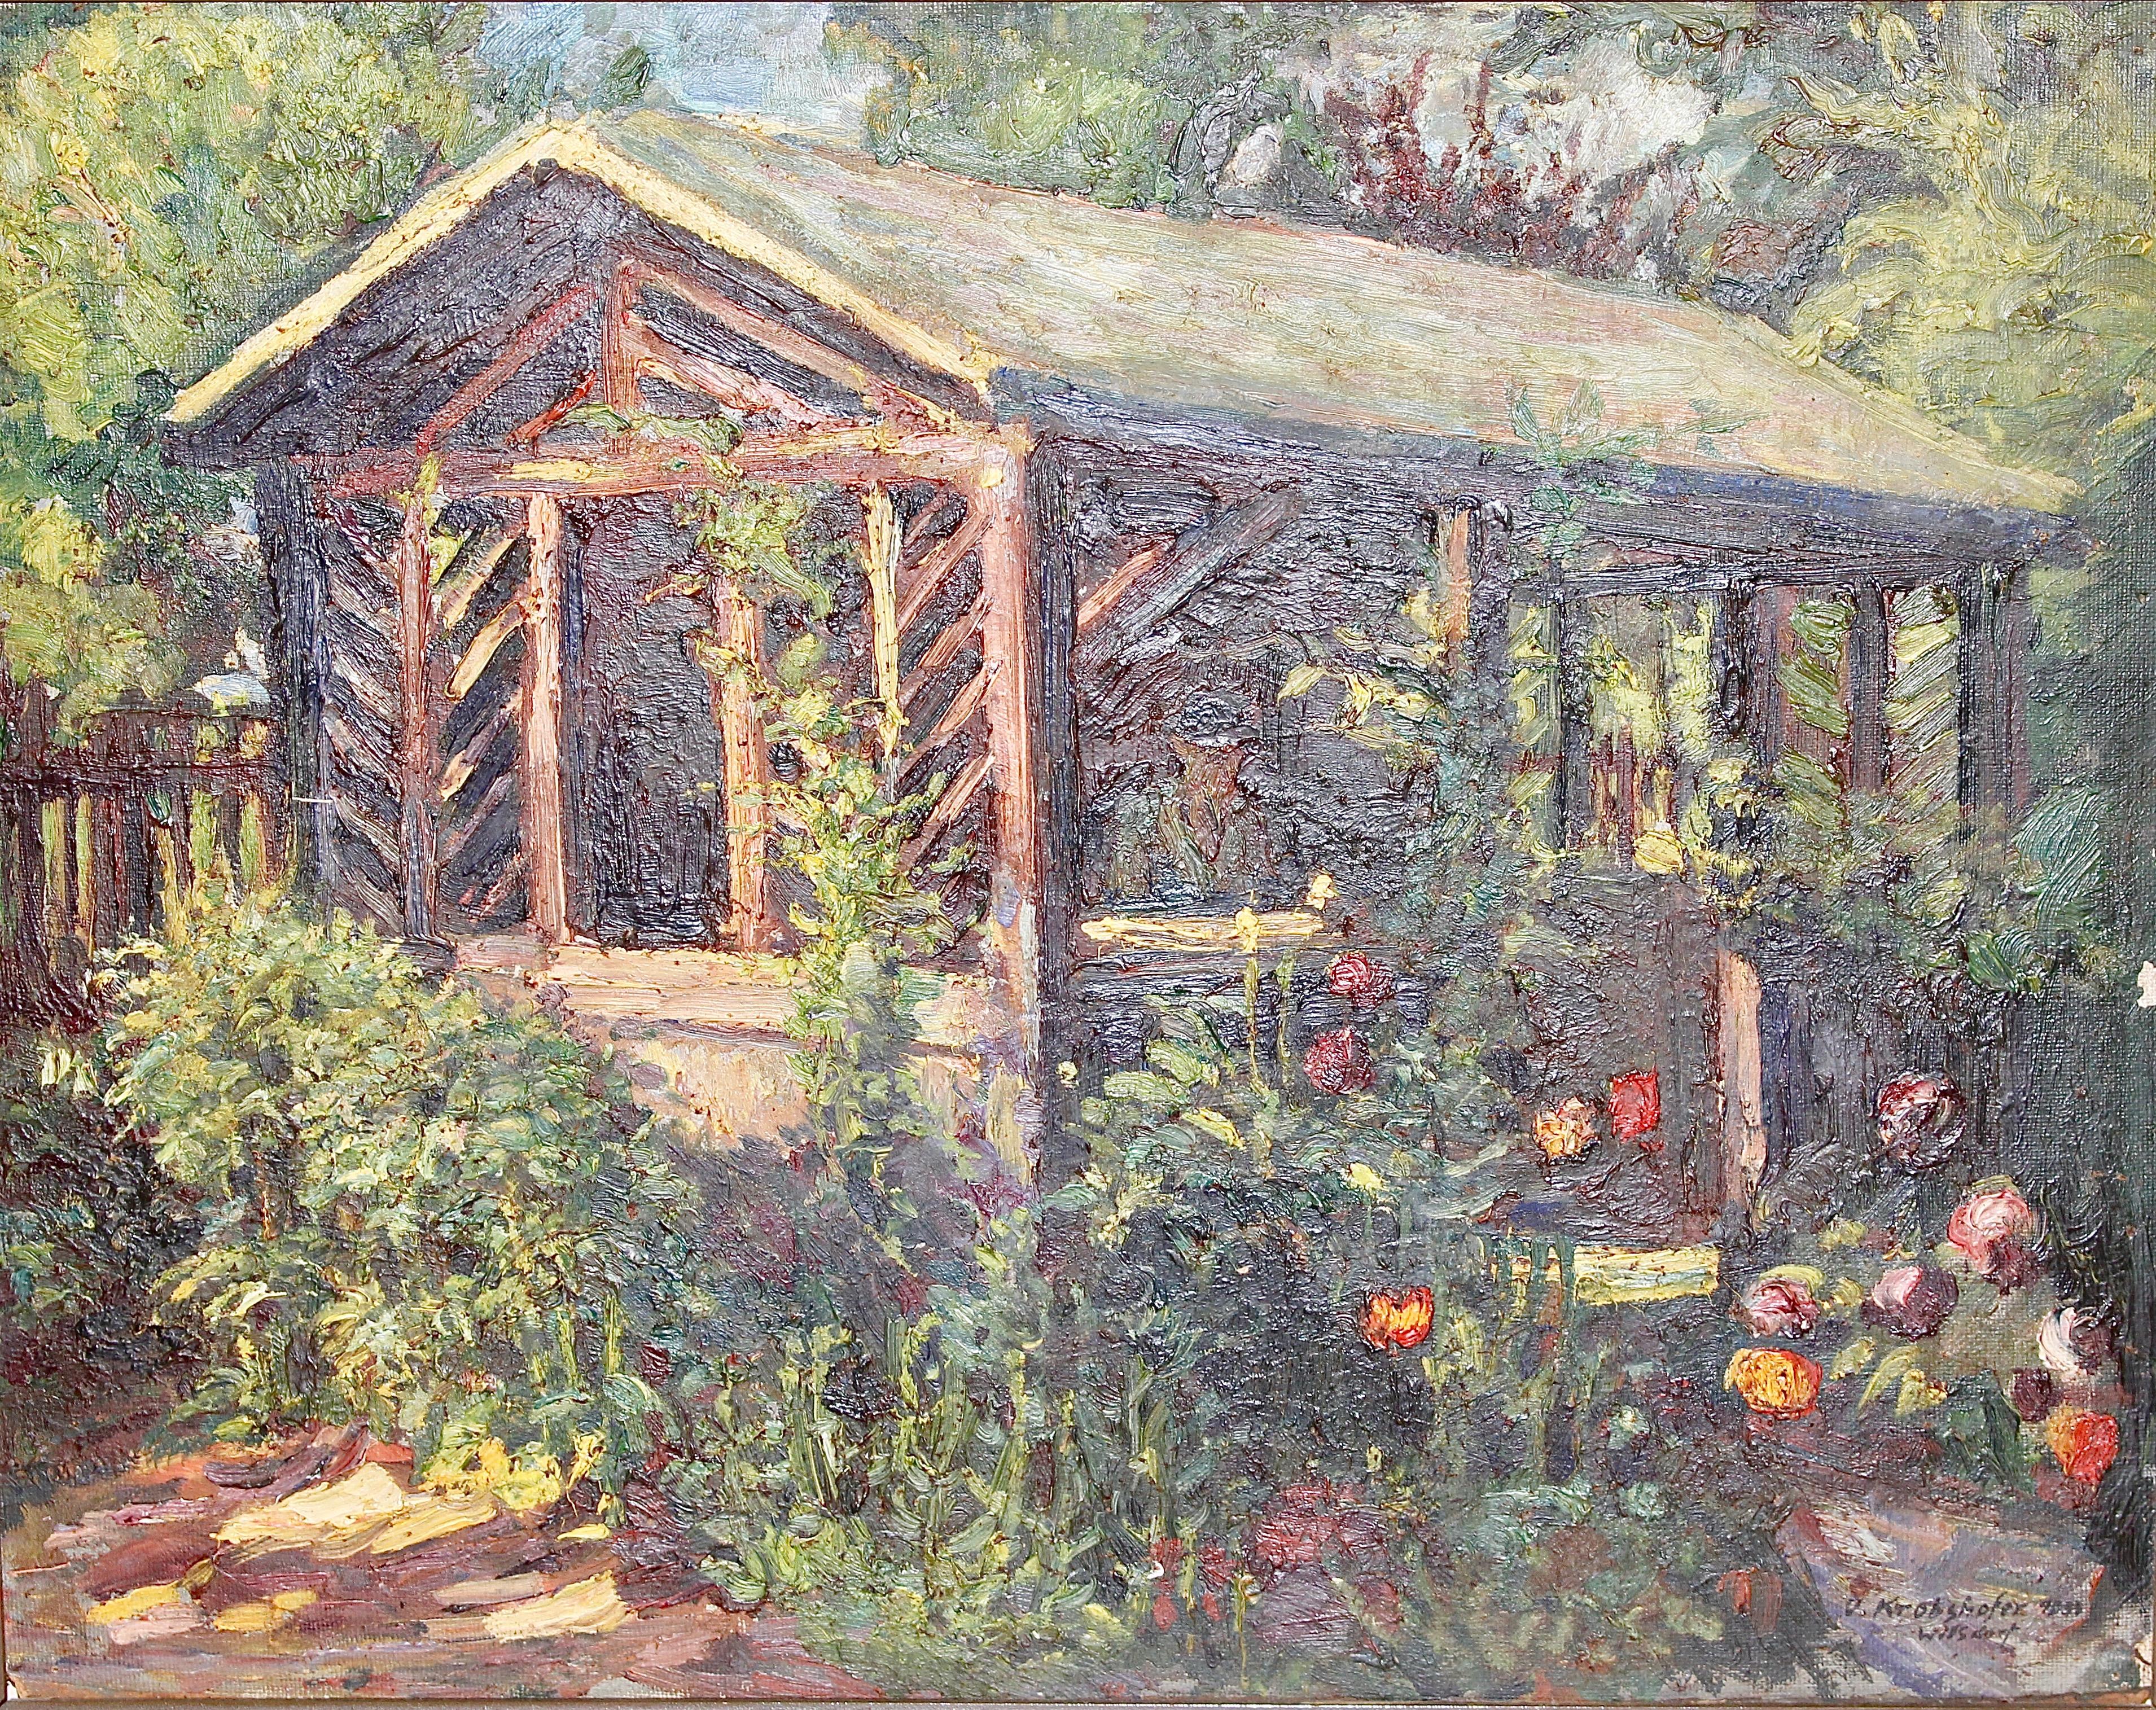 Landscape Painting OSWALD VON KROBSHOFER - Peinture à l'huile ancienne, jardin d'été avec fleurs.